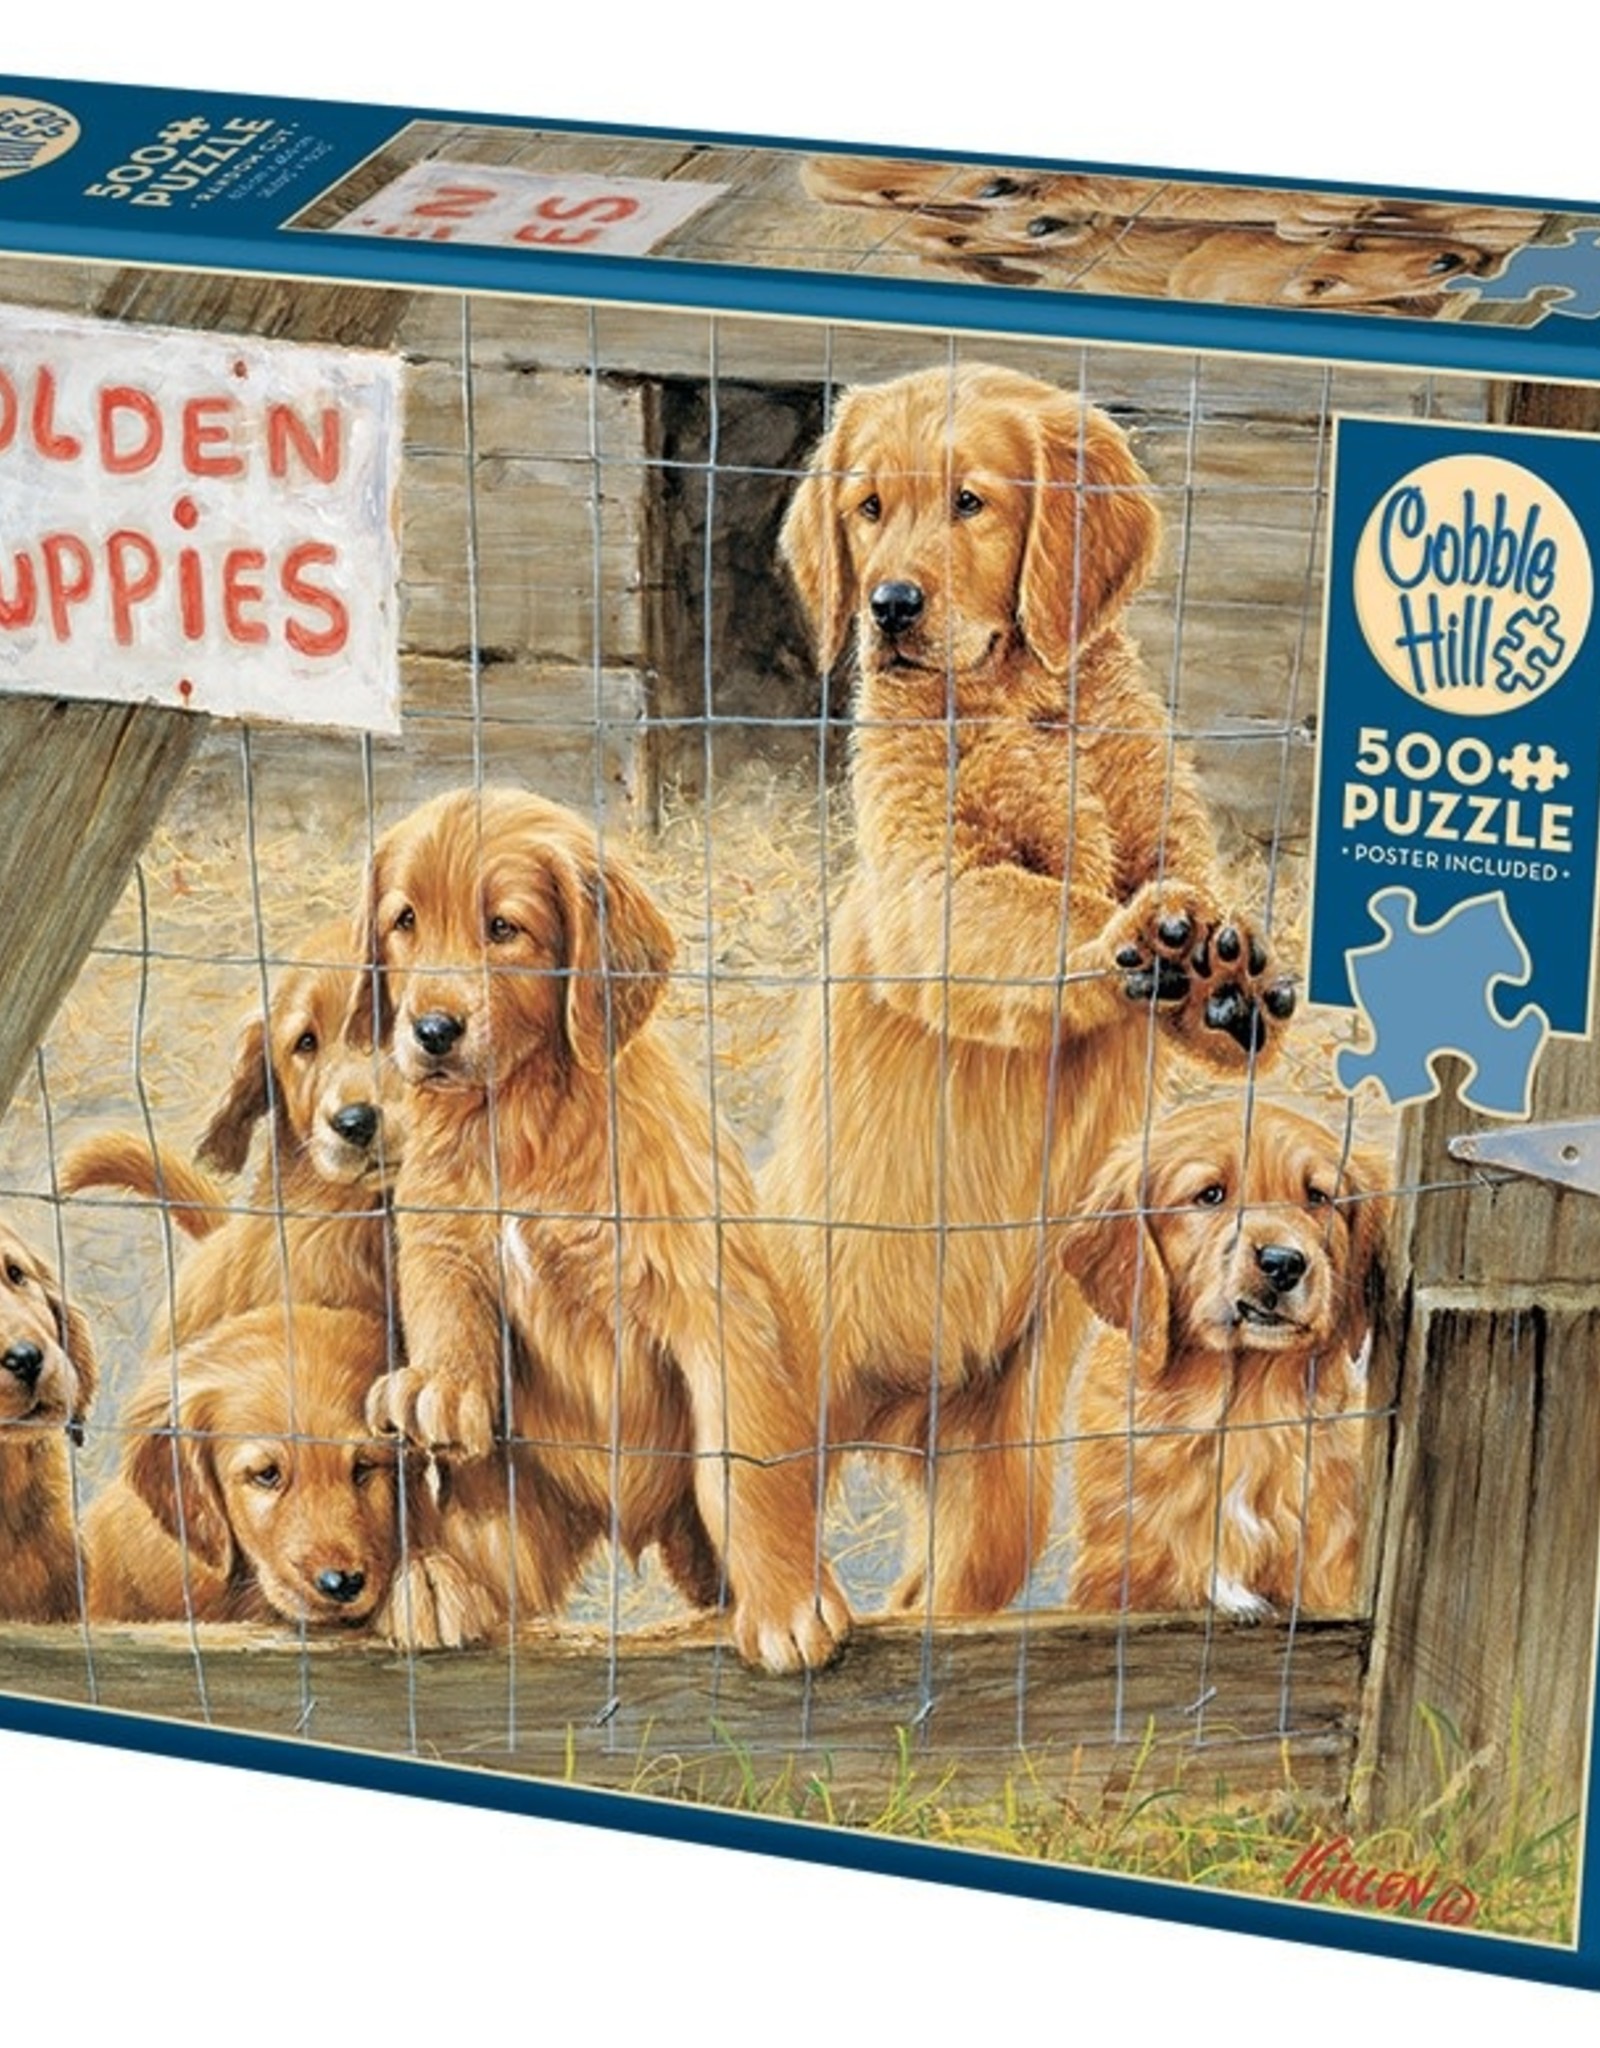 Cobble Hill Puzzles Golden Puppies - 500 Piece Puzzle